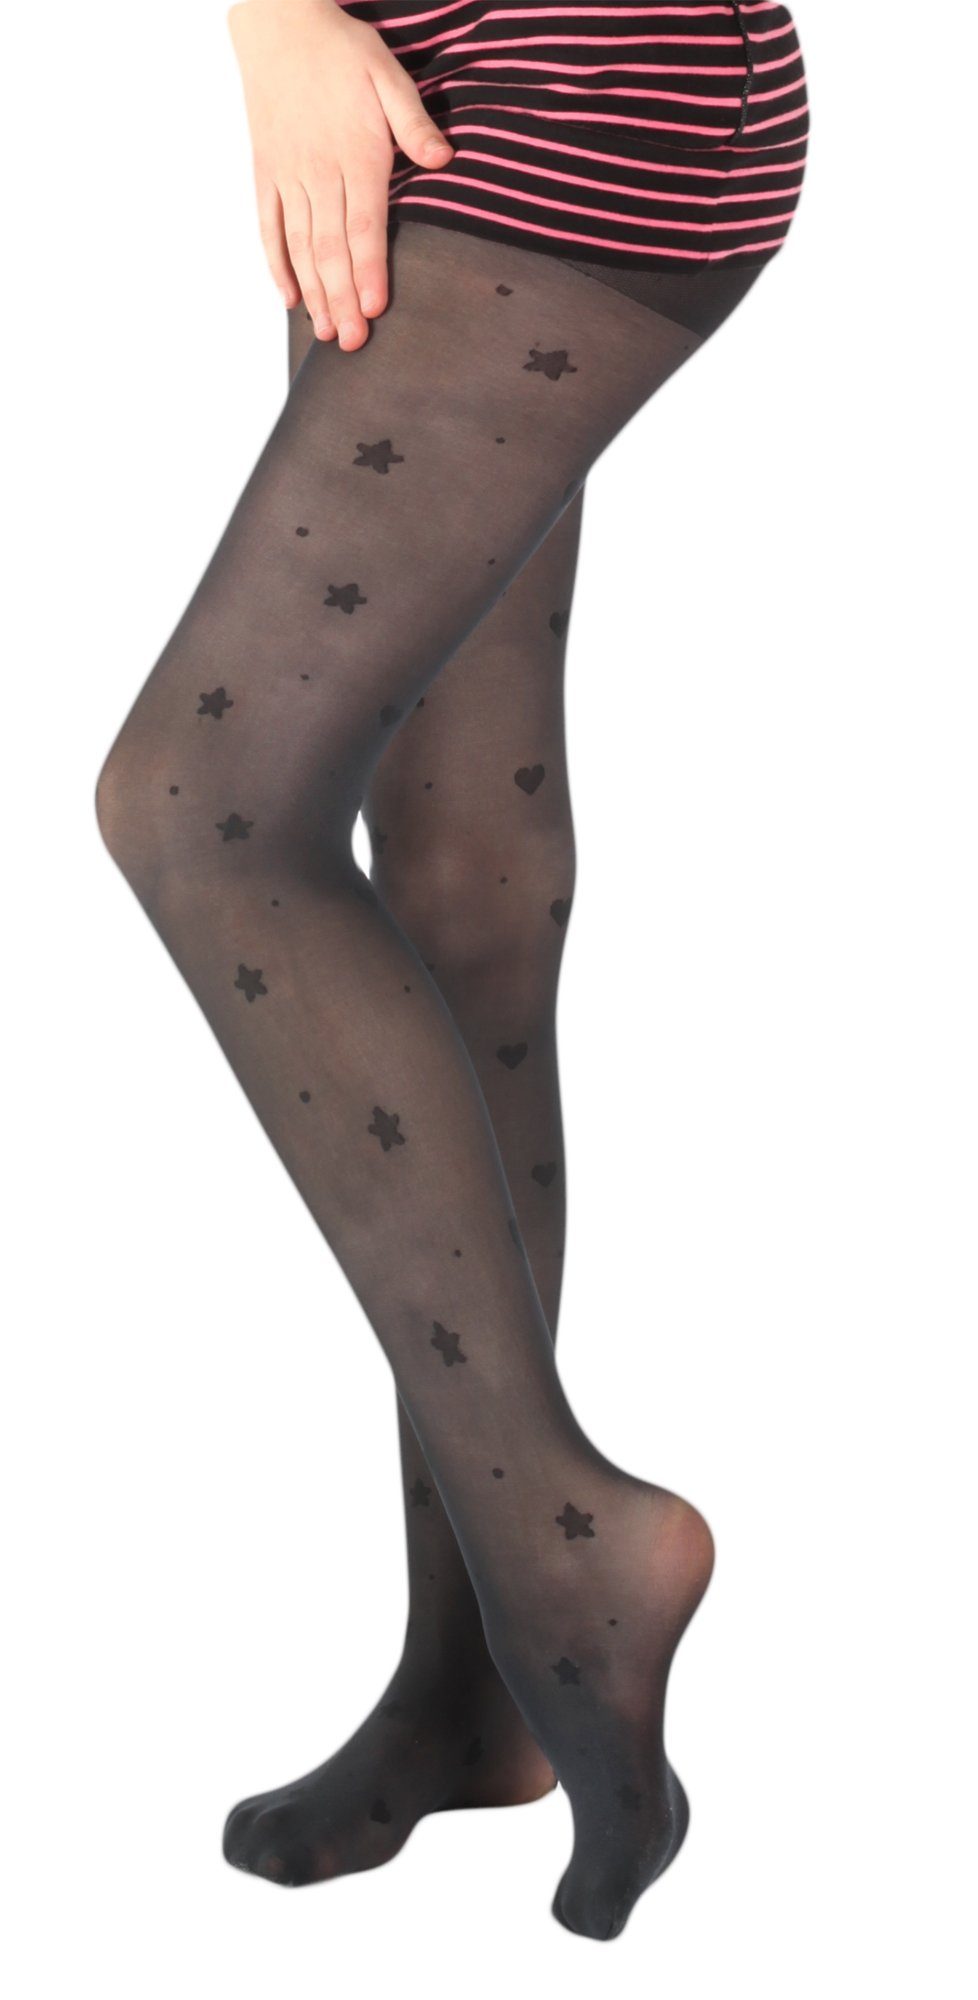 GIULIA Feinstrumpfhose schwarze Mädchen Kinder Strumpfhose mit Sternen Sternchen Muster Print 40 DEN (1 St)